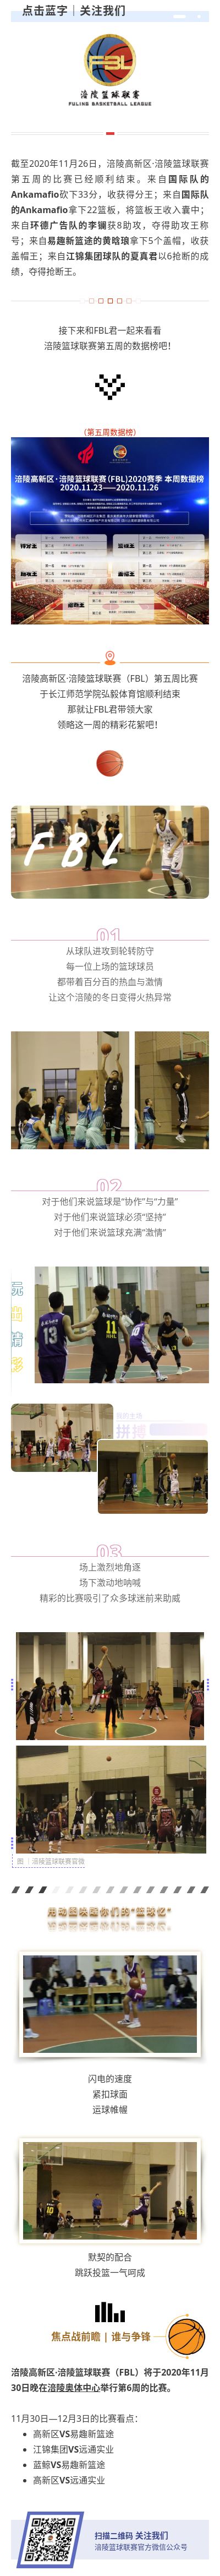 涪陵高新区·涪陵篮球联赛（FBL）2020赛季周报（11.23-26）